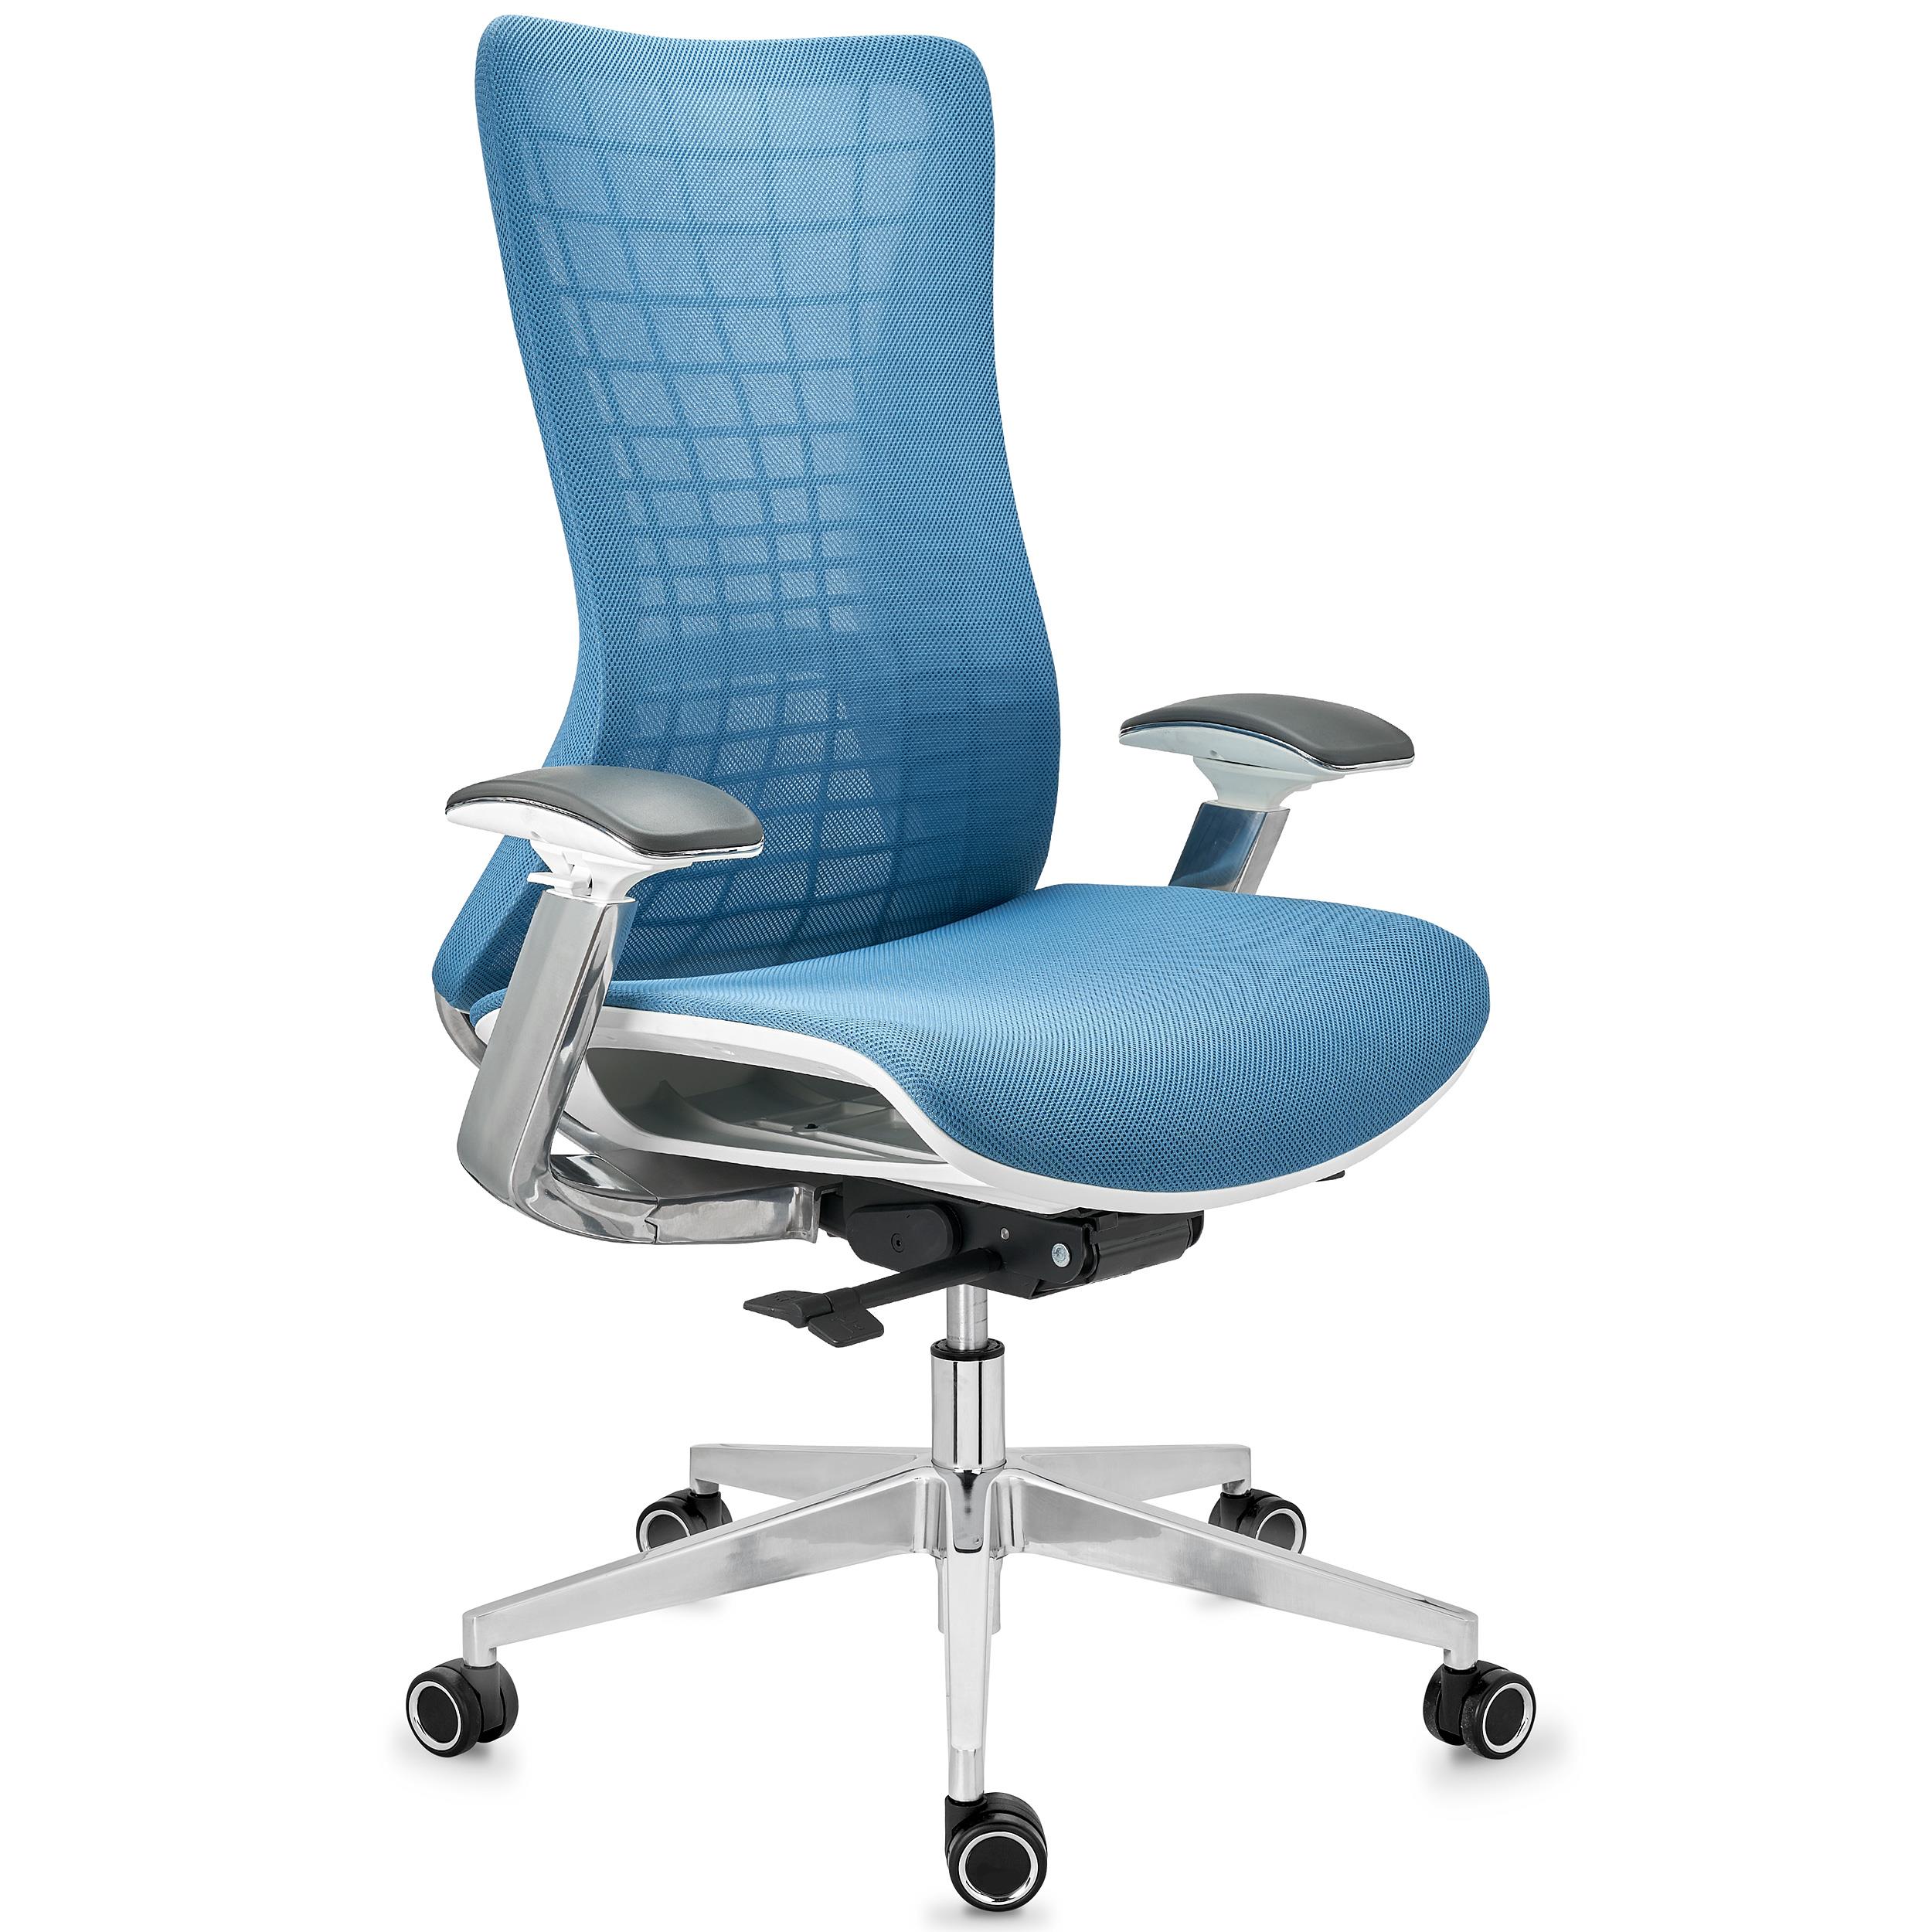 Chaise Ergonomique ENERGY, Design Unique, Excellente Qualité, en Maille, Bleu